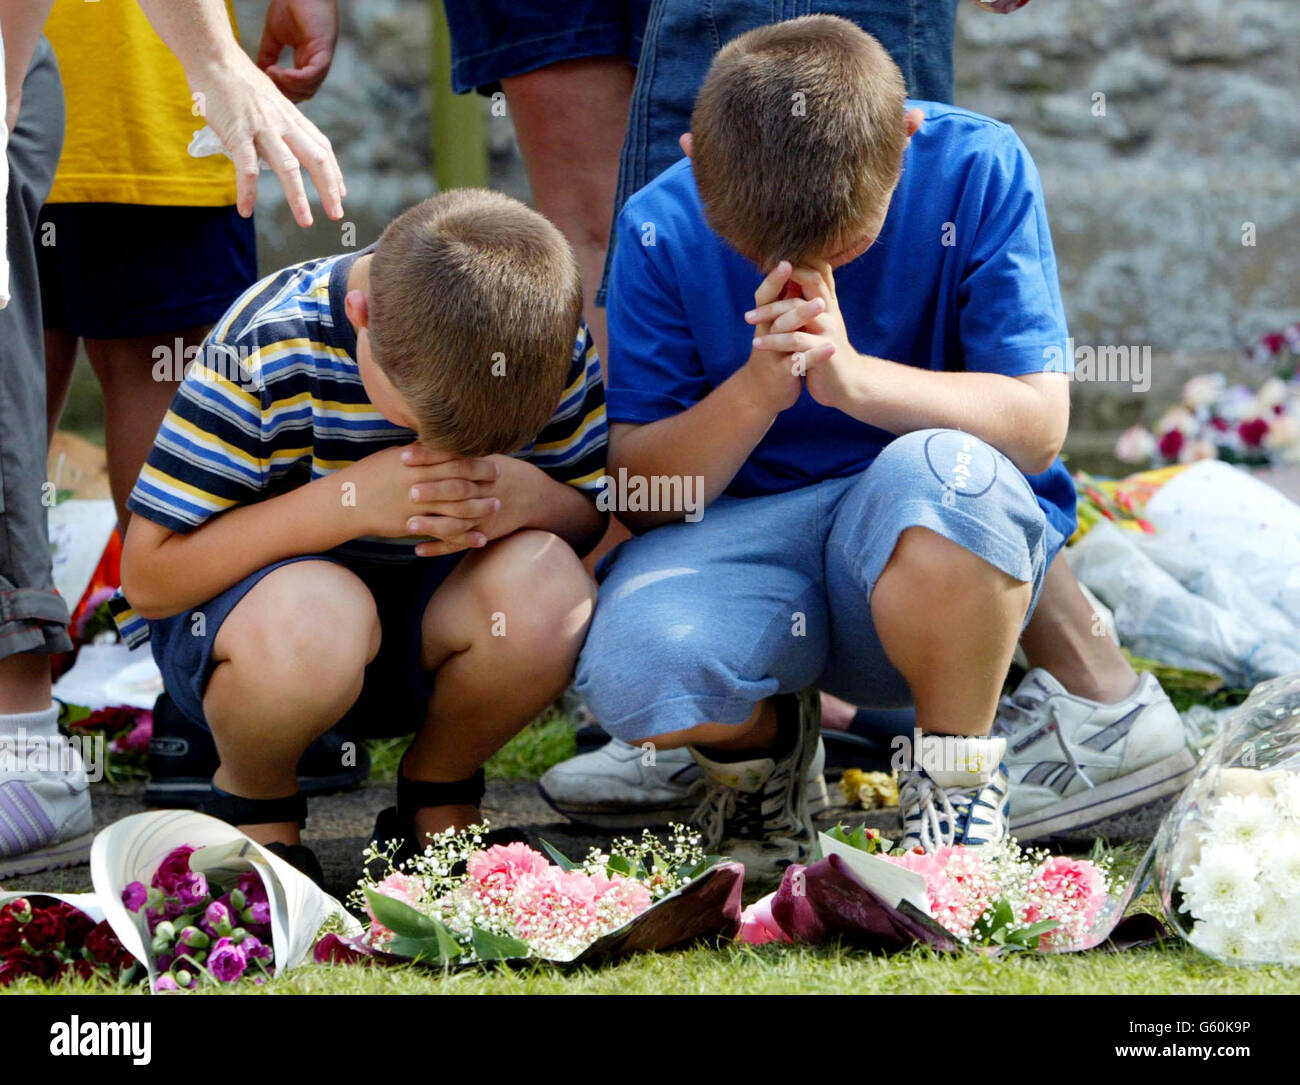 Dos niños depositan flores y oran en la iglesia de St. Andrews, Soham, Cambs, por las chicas de la escuela asesinadas Holly Wells y Jessica Chapman. Foto de stock